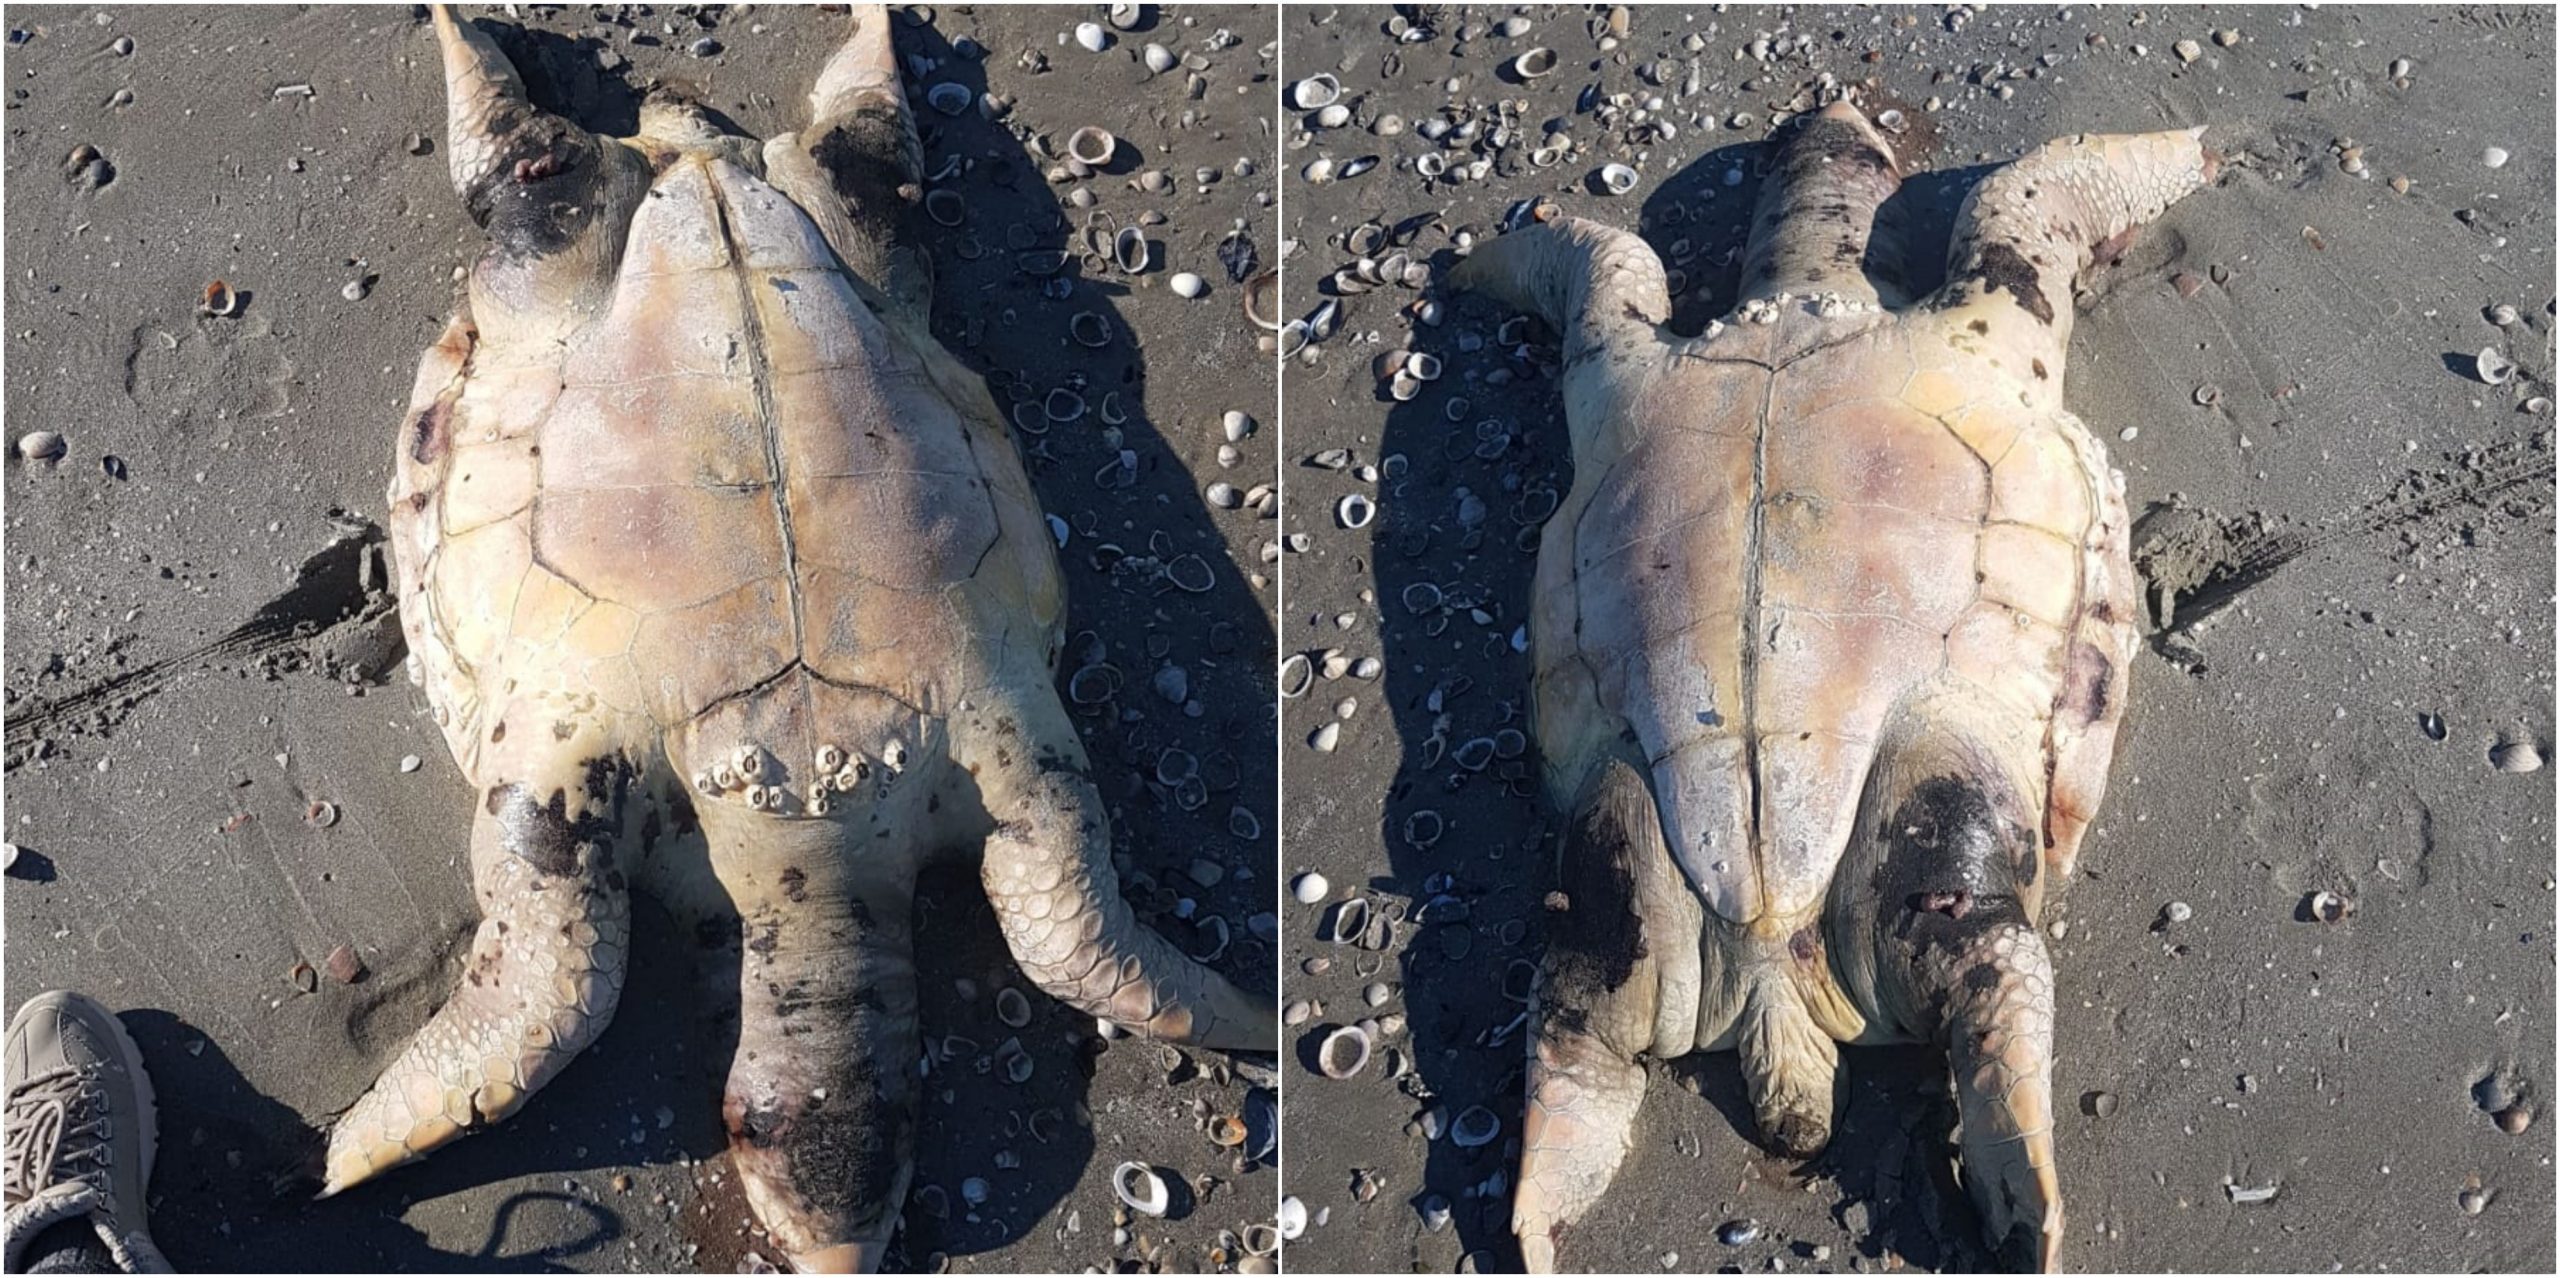 Trovata a Ponente un’altra carcassa di tartaruga